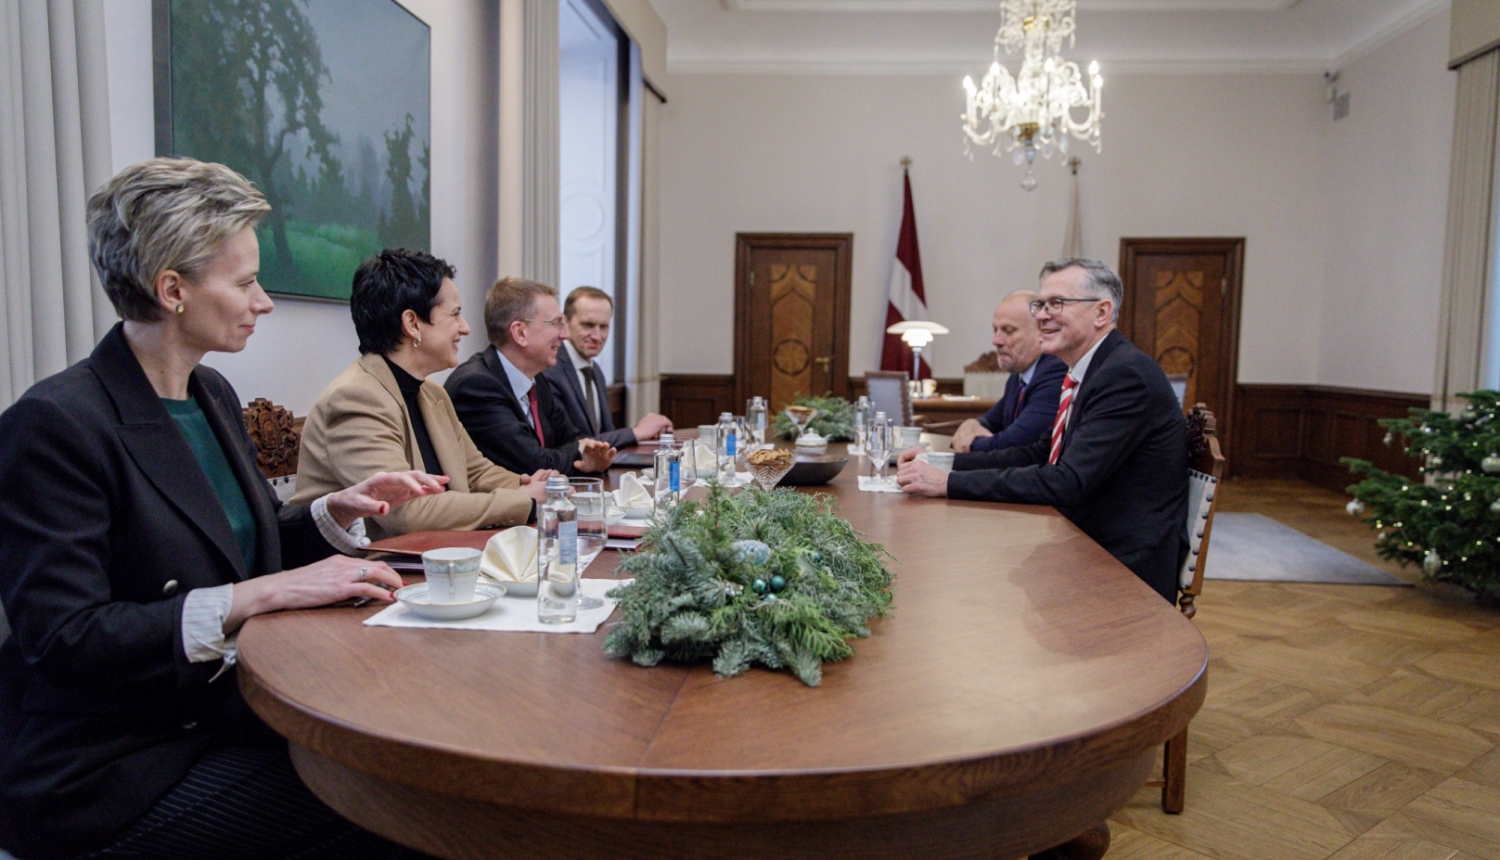 Valsts prezidenta Edgara Rinkēviča tikšanās ar Saeimas Aizsardzības, iekšlietu un korupcijas novēršanas komisijas priekšsēdētāju Raimondu Bergmani un Nacionālās drošības komisijas priekšsēdētāju Ainaru Latkovski